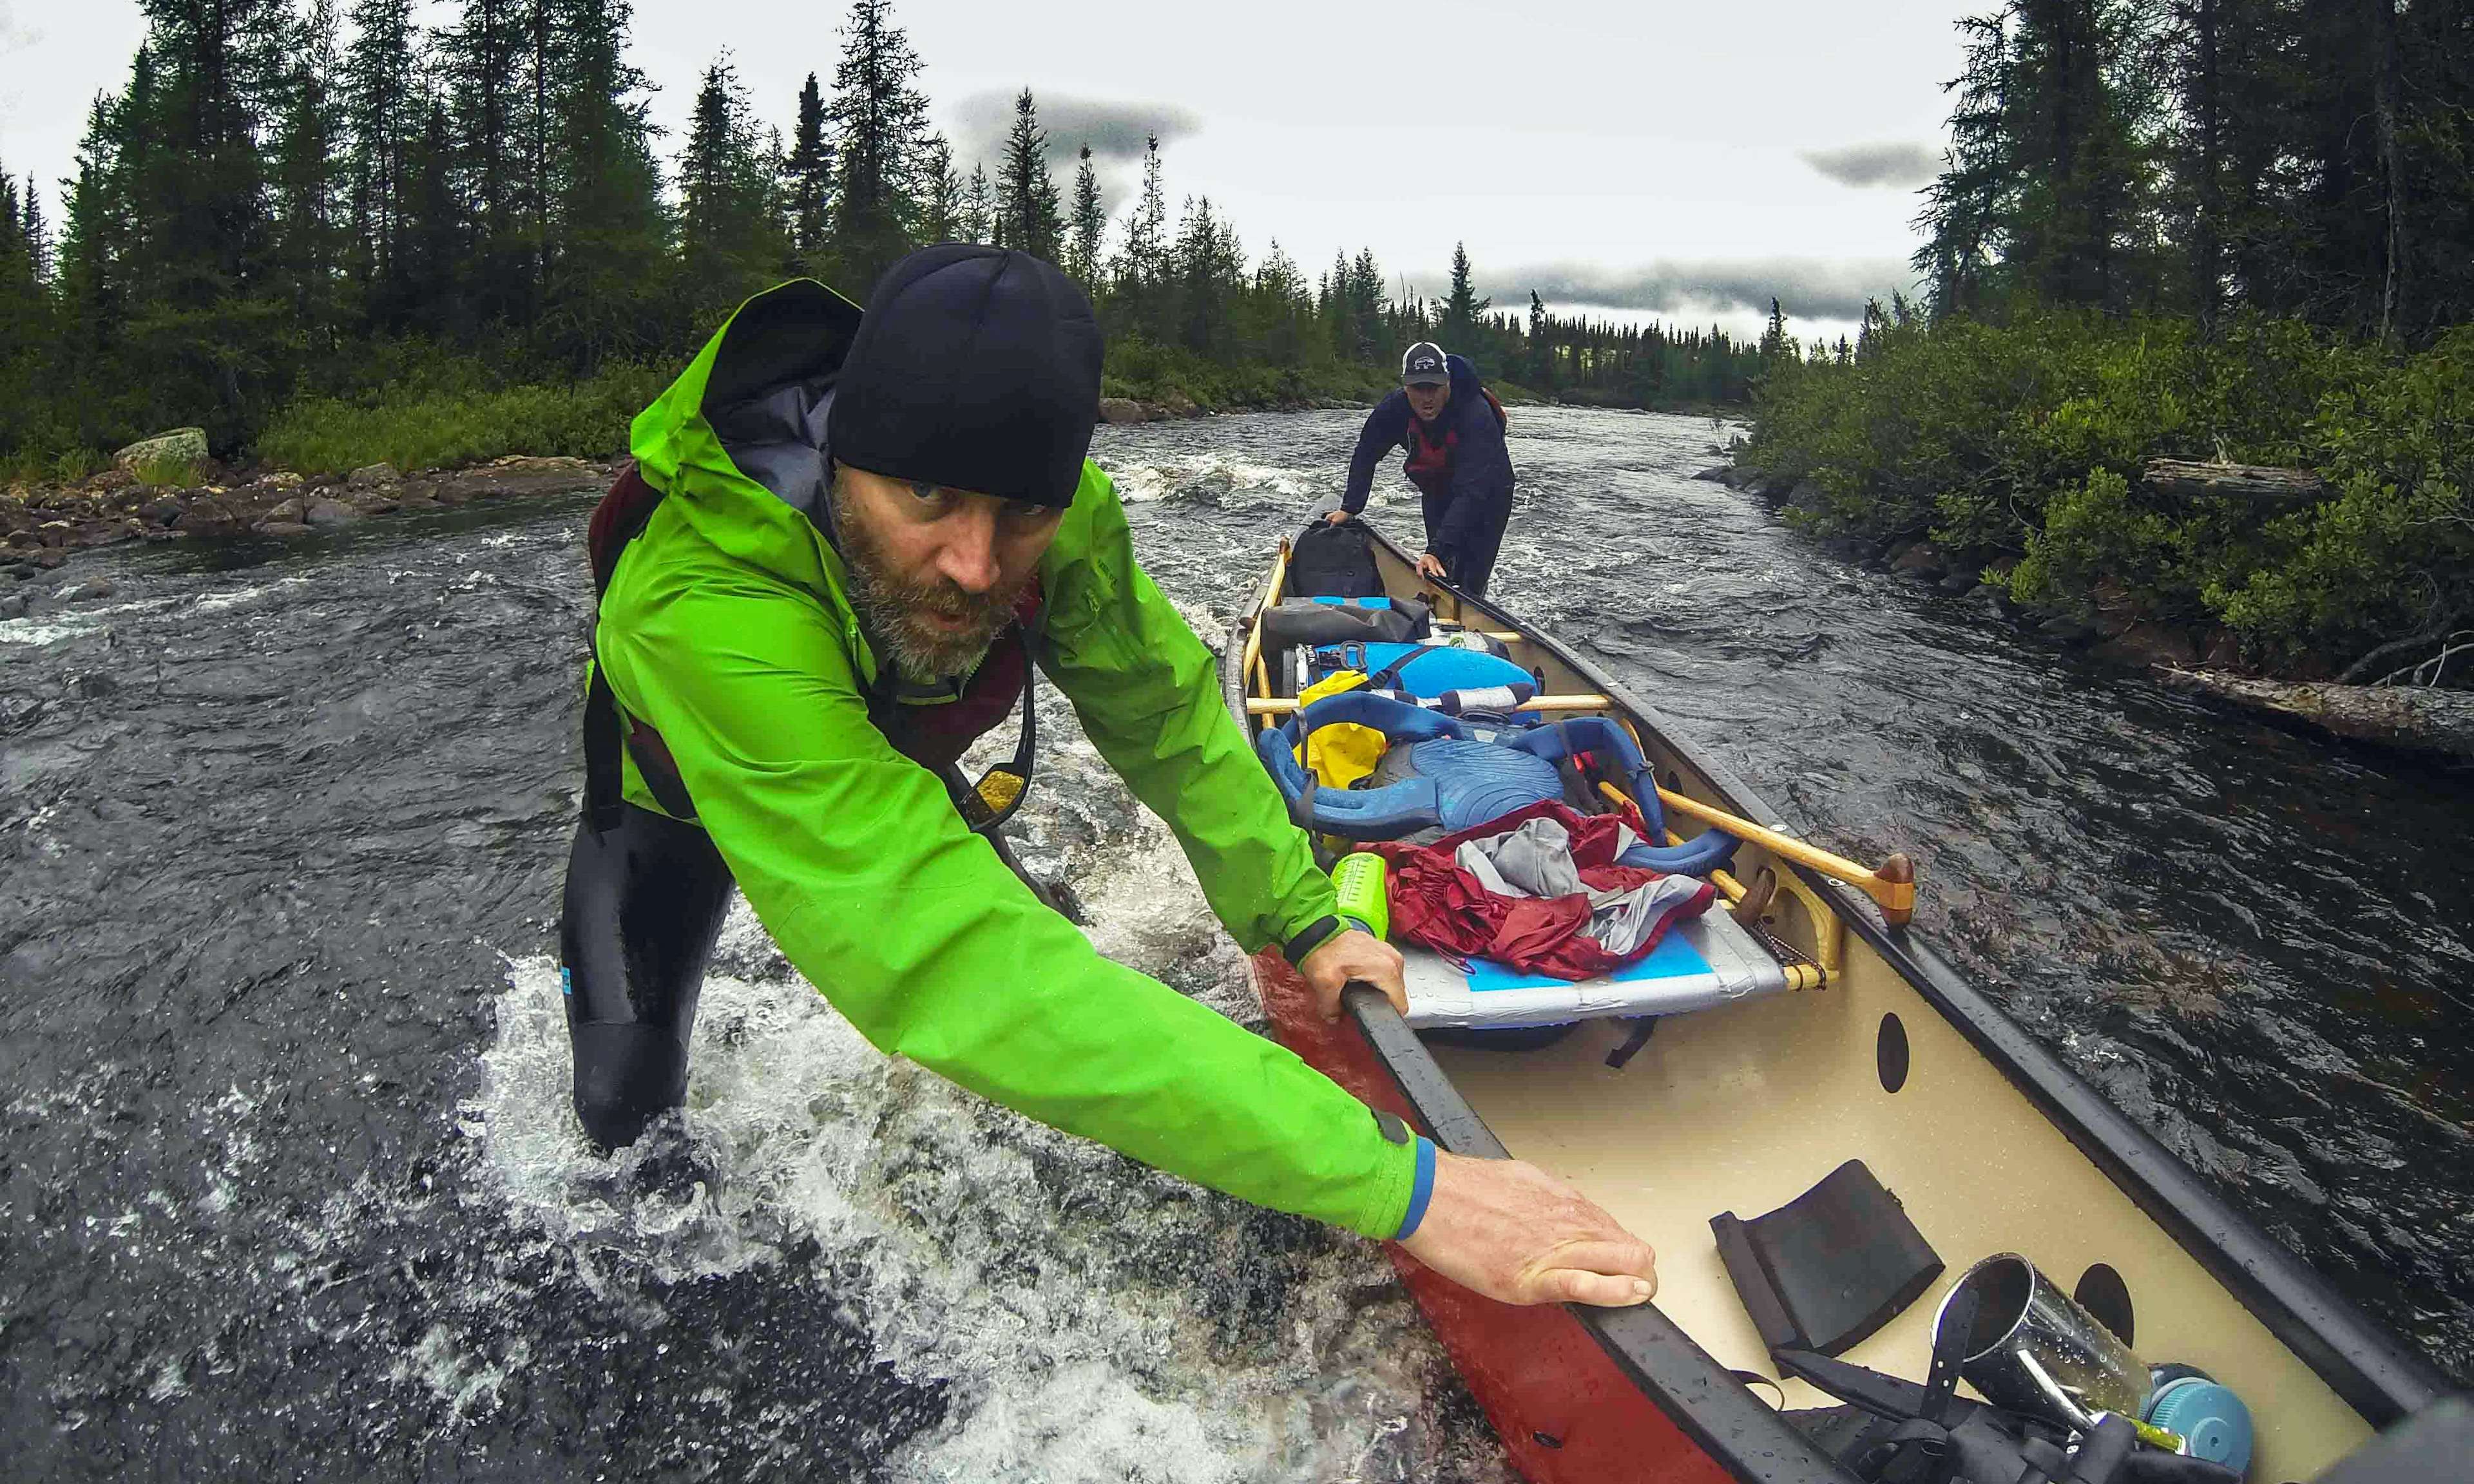 Two men push a canoe through a rushing river.